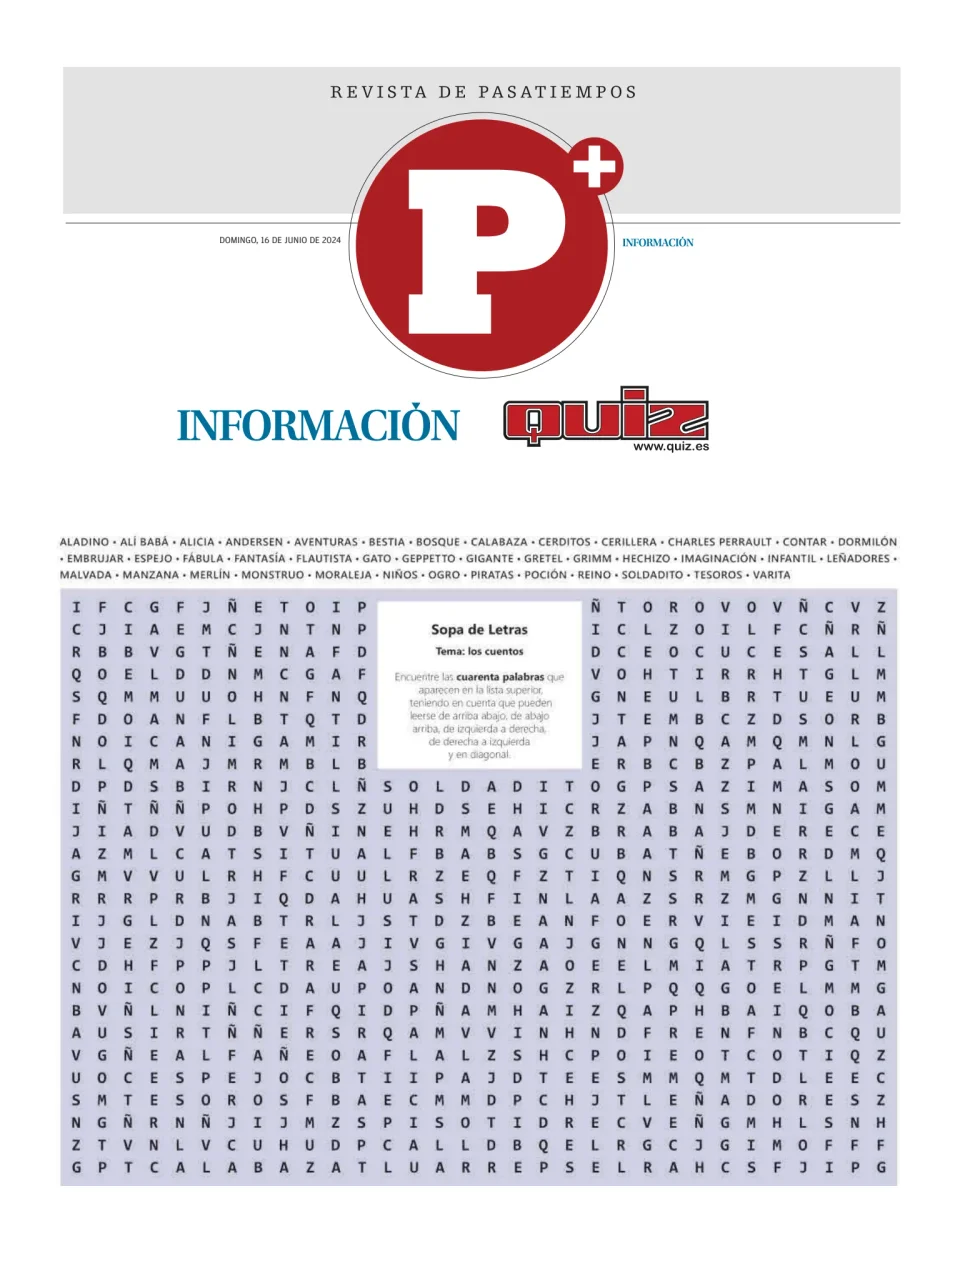 Diario Informacion - Pasatiempos